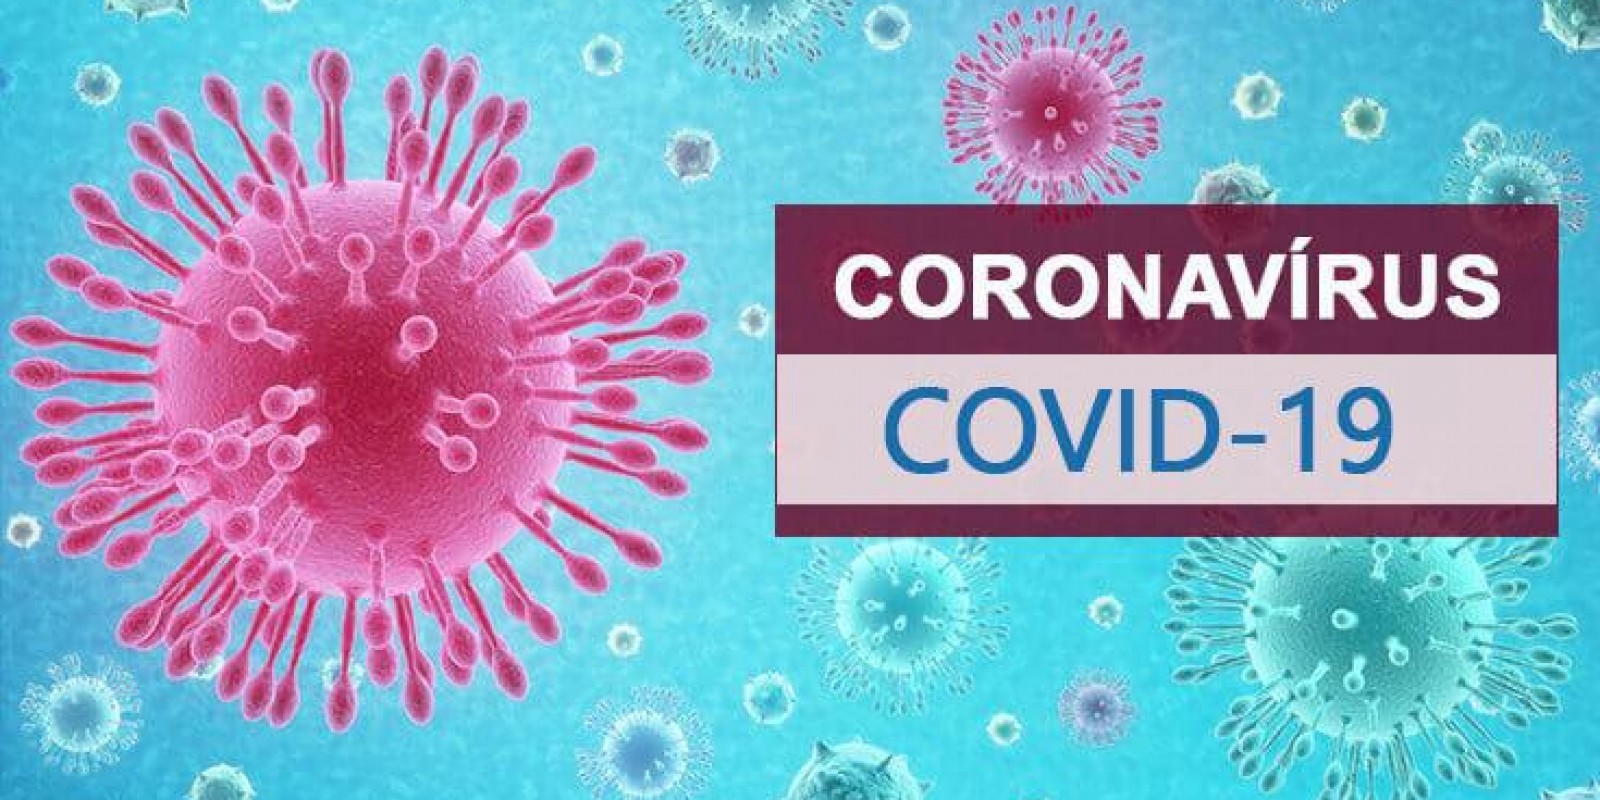 Coronavírus: O que é, sintomas e como se prevenir da COVID-19